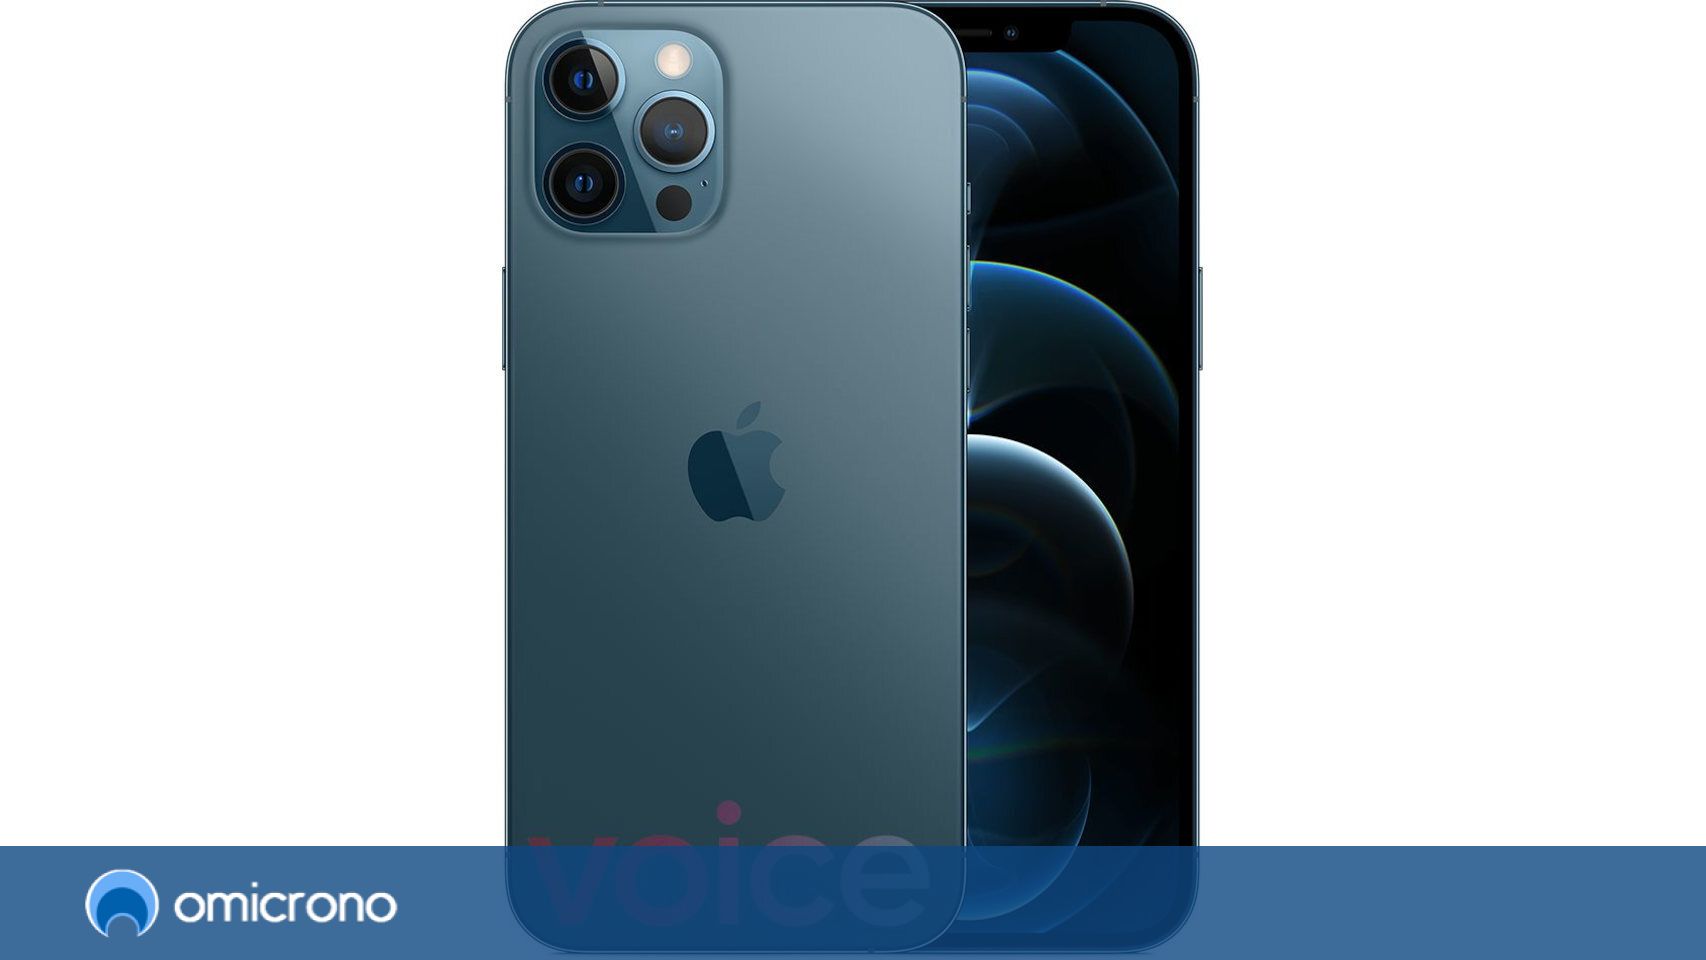 Apple presenta los iPhone 12 y 12 mini 5G junto al nuevo altavoz HomePod  mini